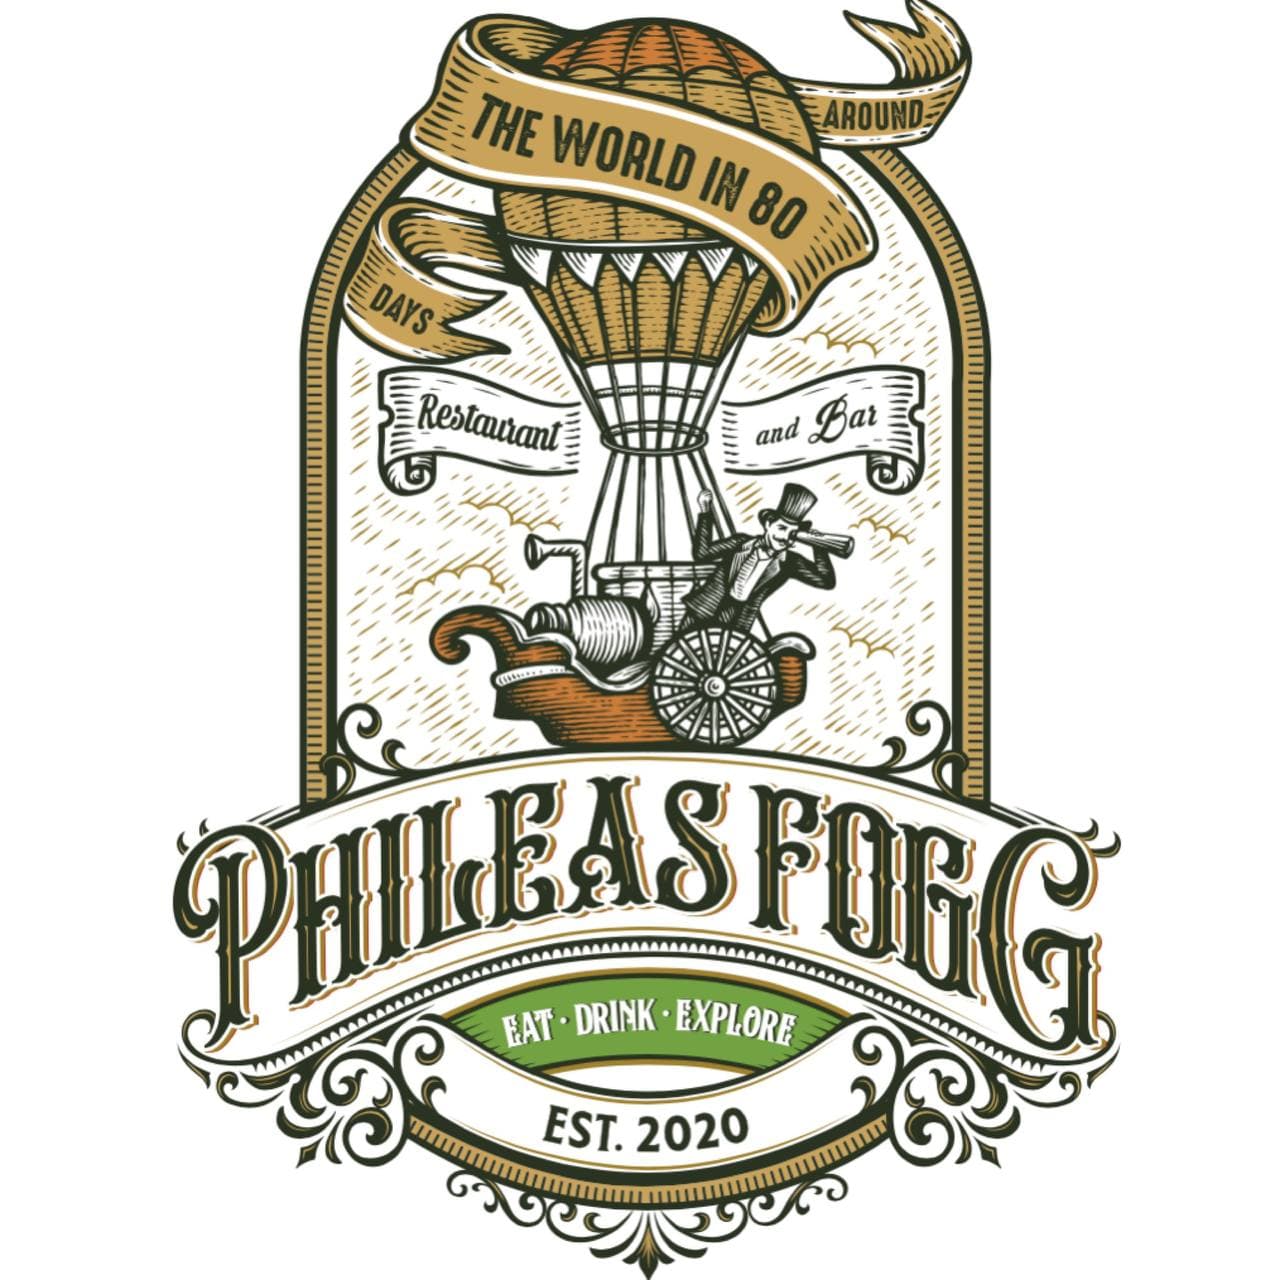 Phileas Fogg - Coming Soon in UAE